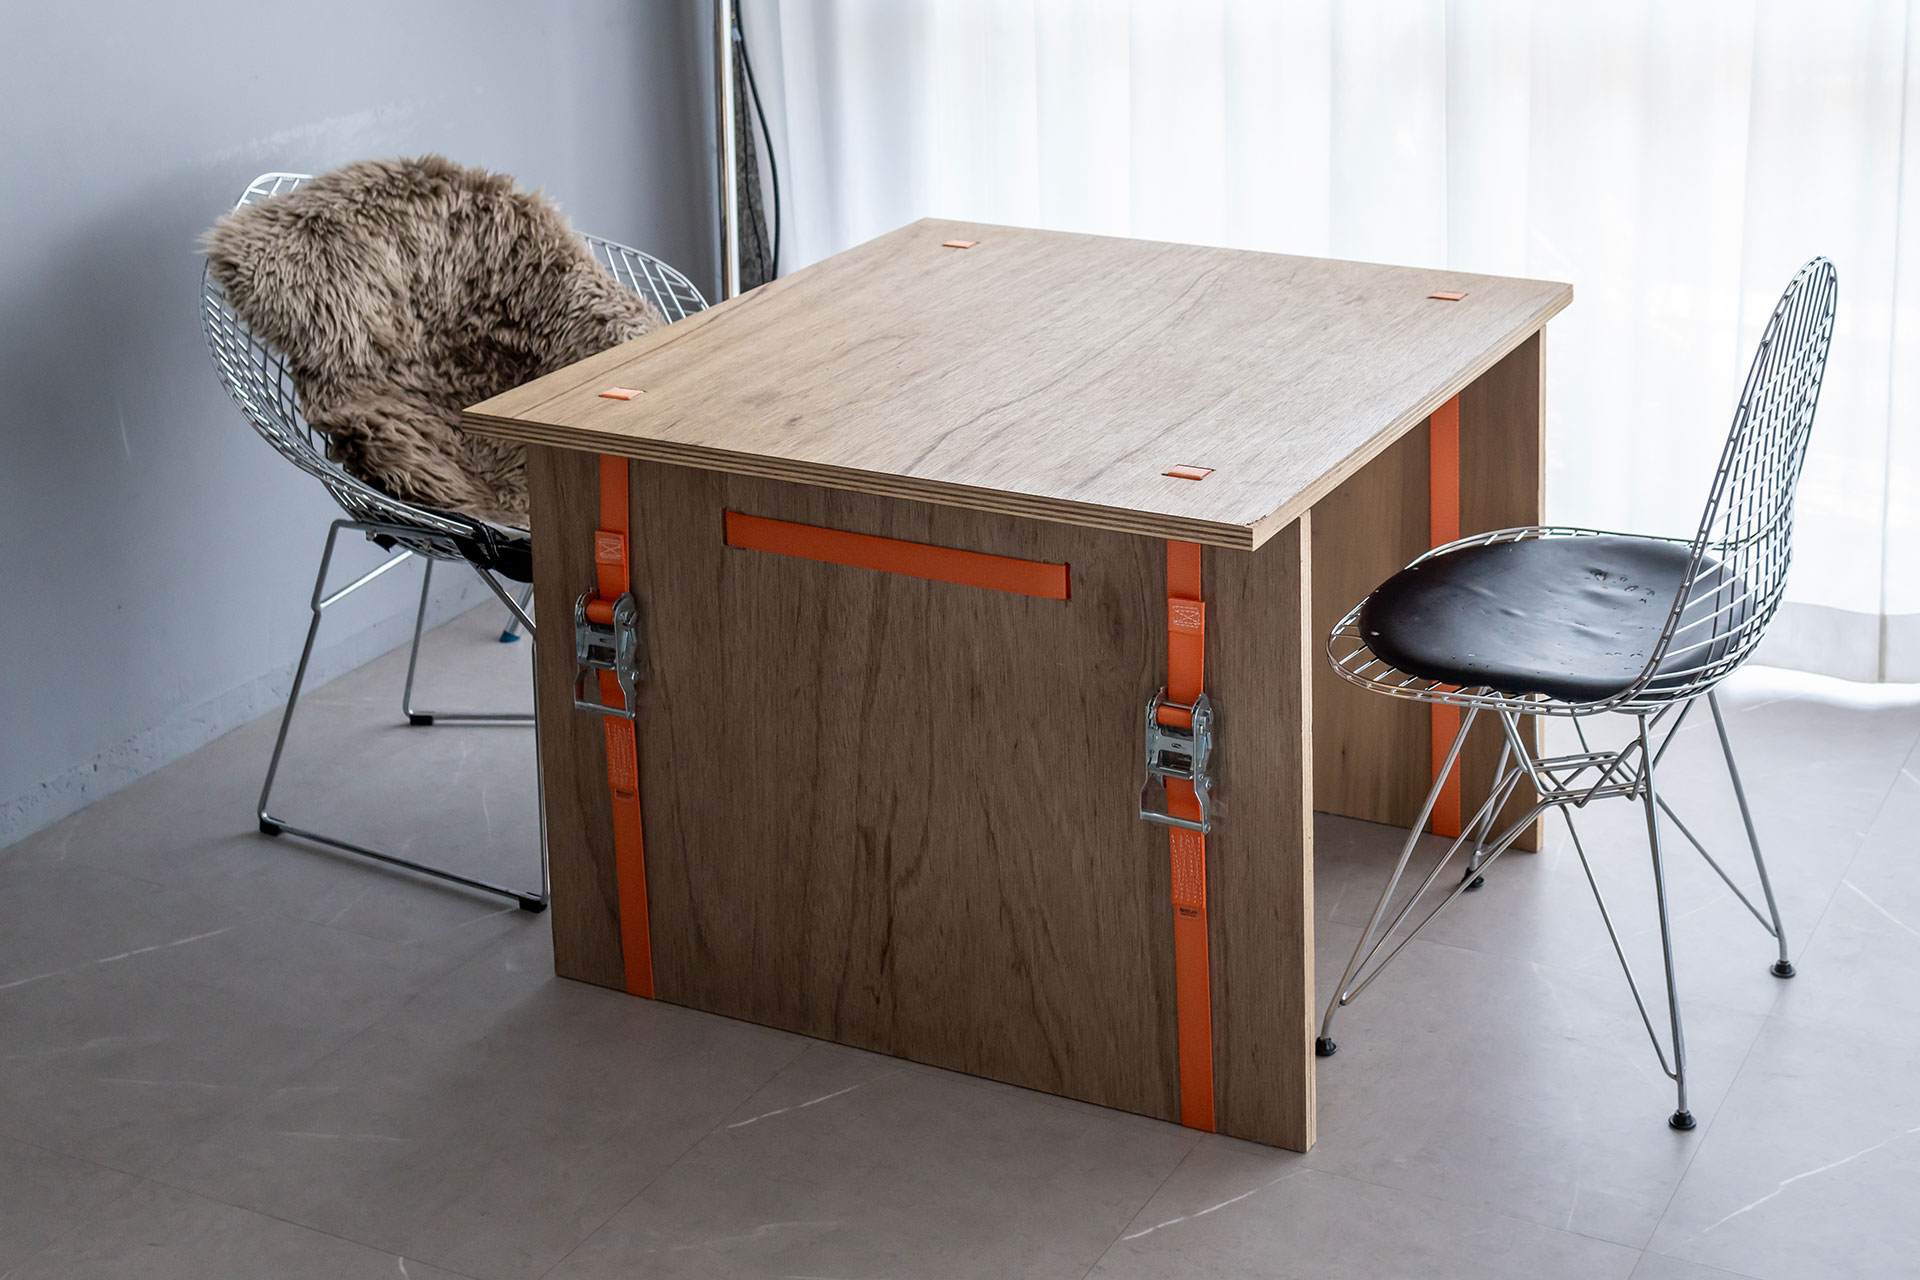 建築家・元木大輔氏による「BELT FURNITURE」を参考にDIYでつくったテーブル。